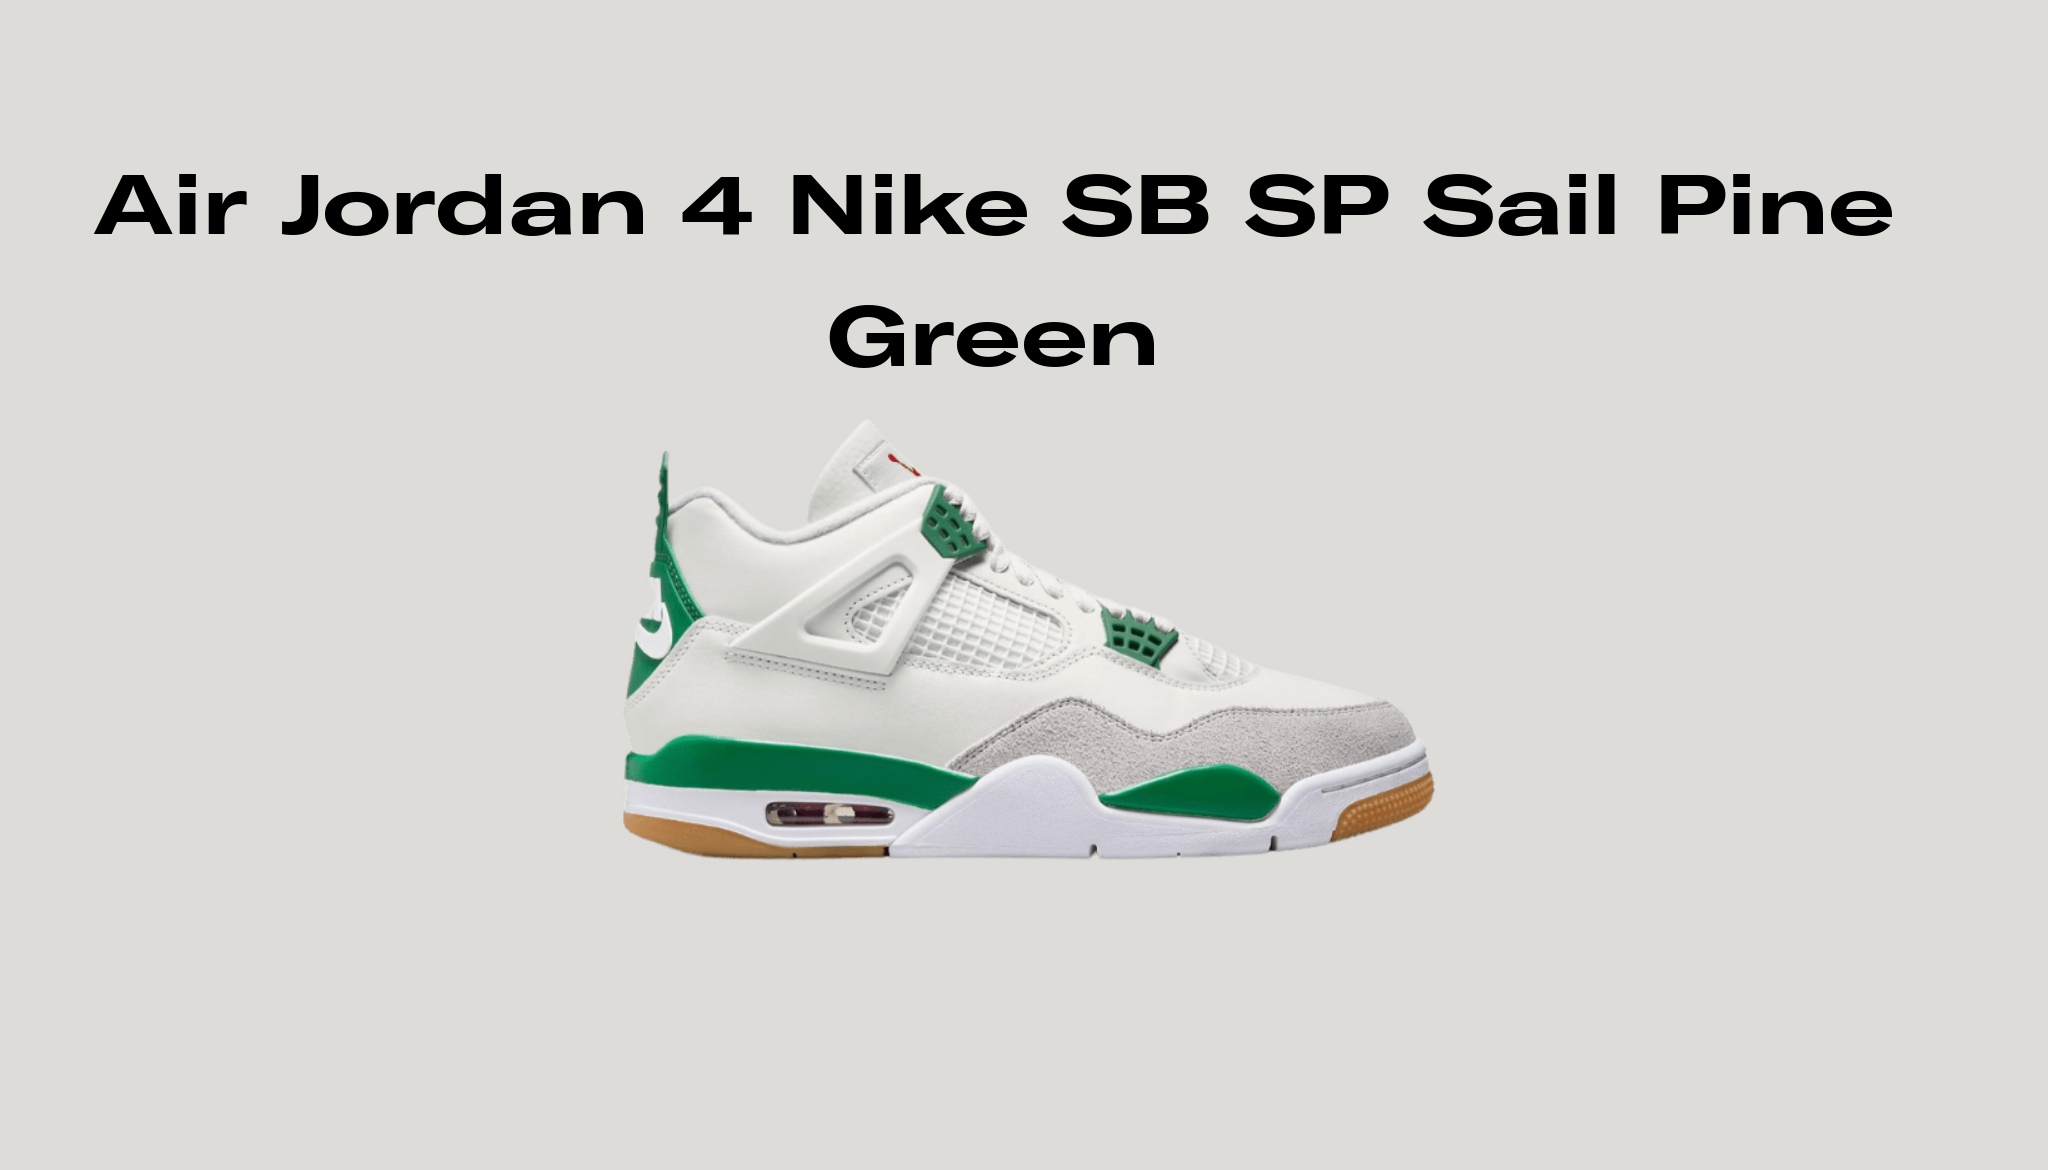 Air Jordan 4 Nike SB SP Sail Pine Green Release Date, Raffles, and